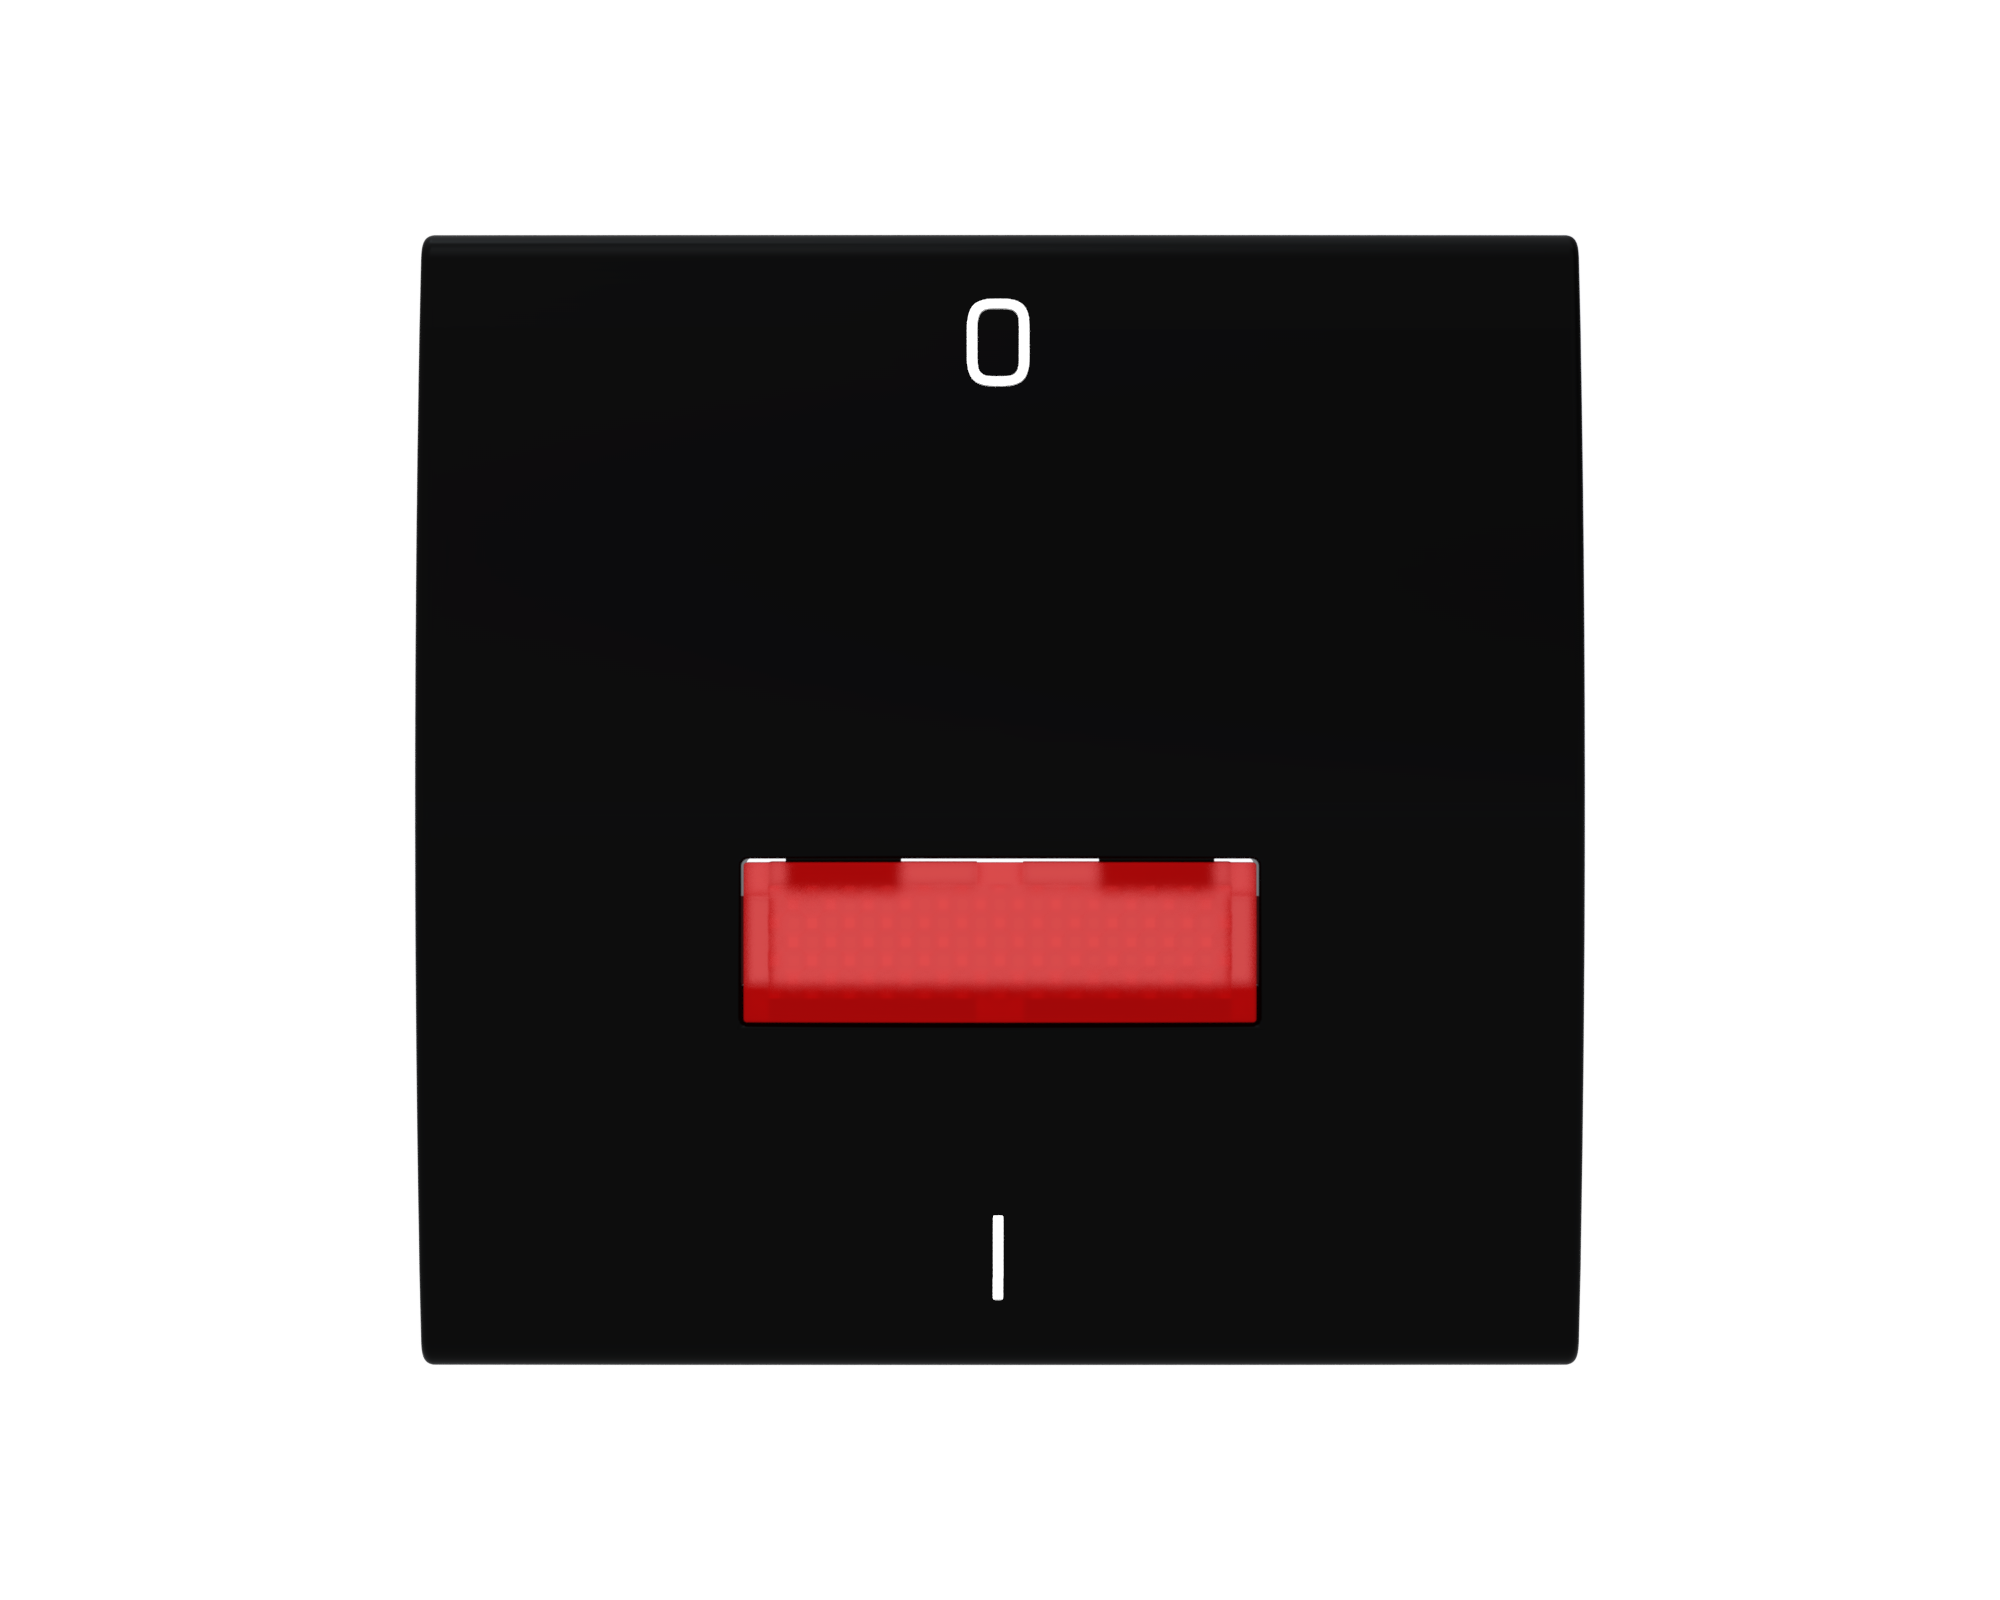 Rüthen Flächenwippe mit Linse rot und Symbol 0 + I schwarz